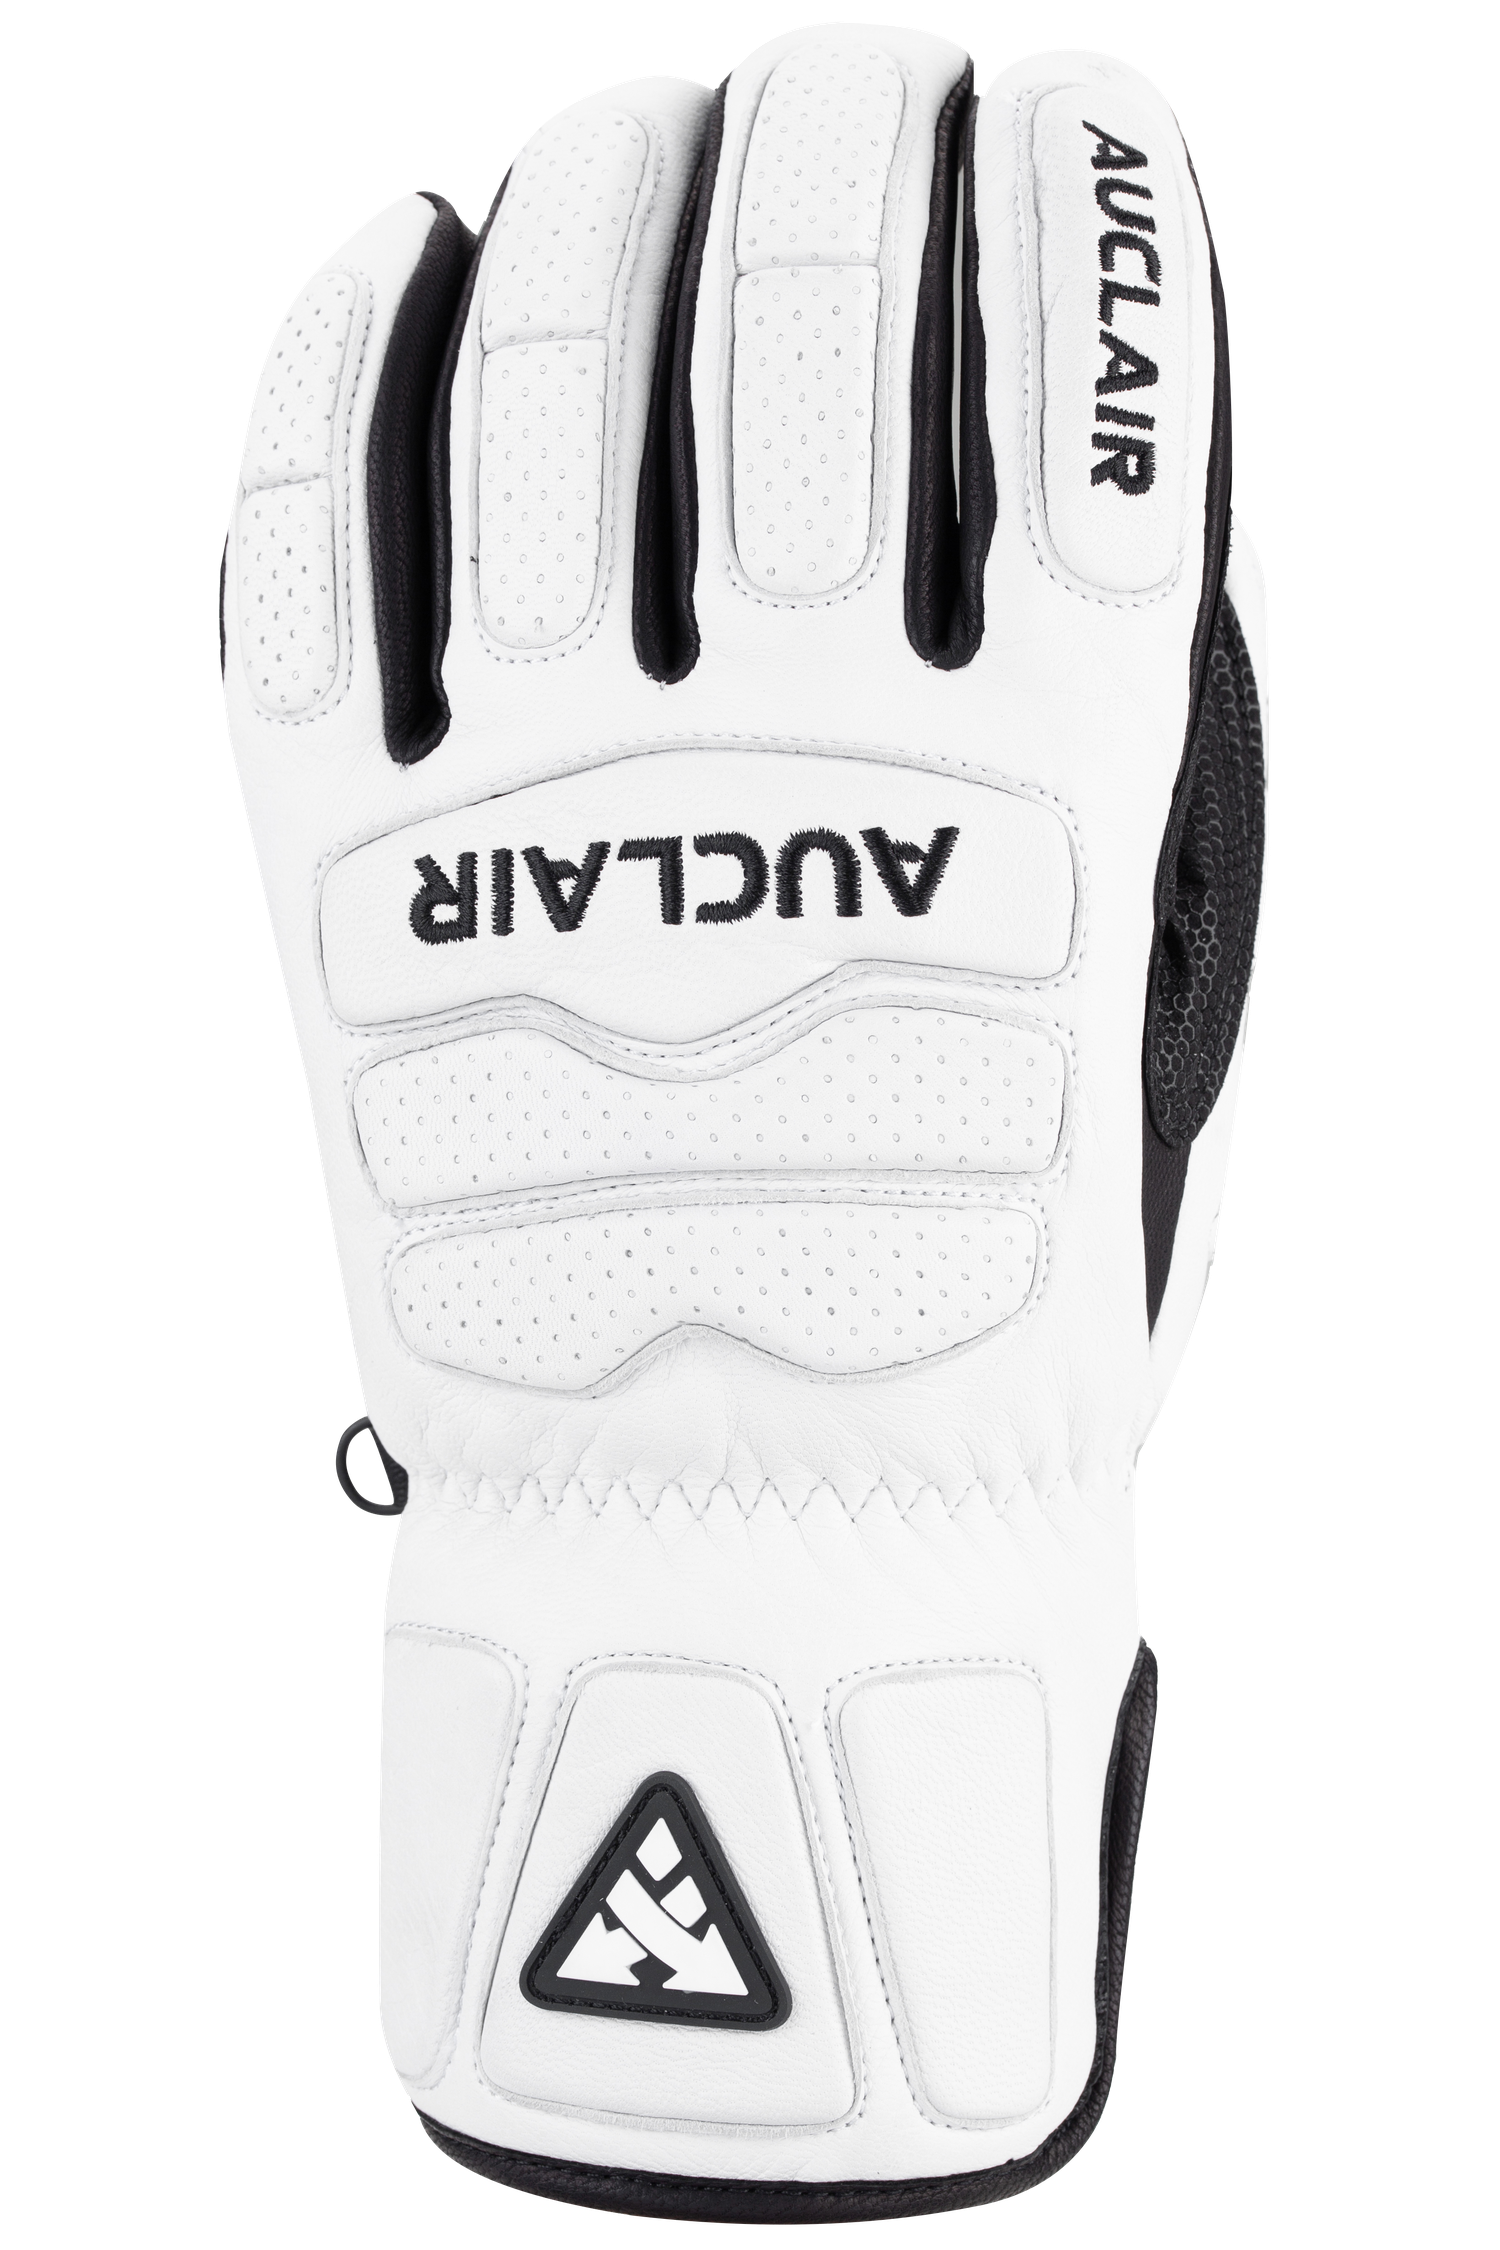 Race Shield Gloves - Junior, White